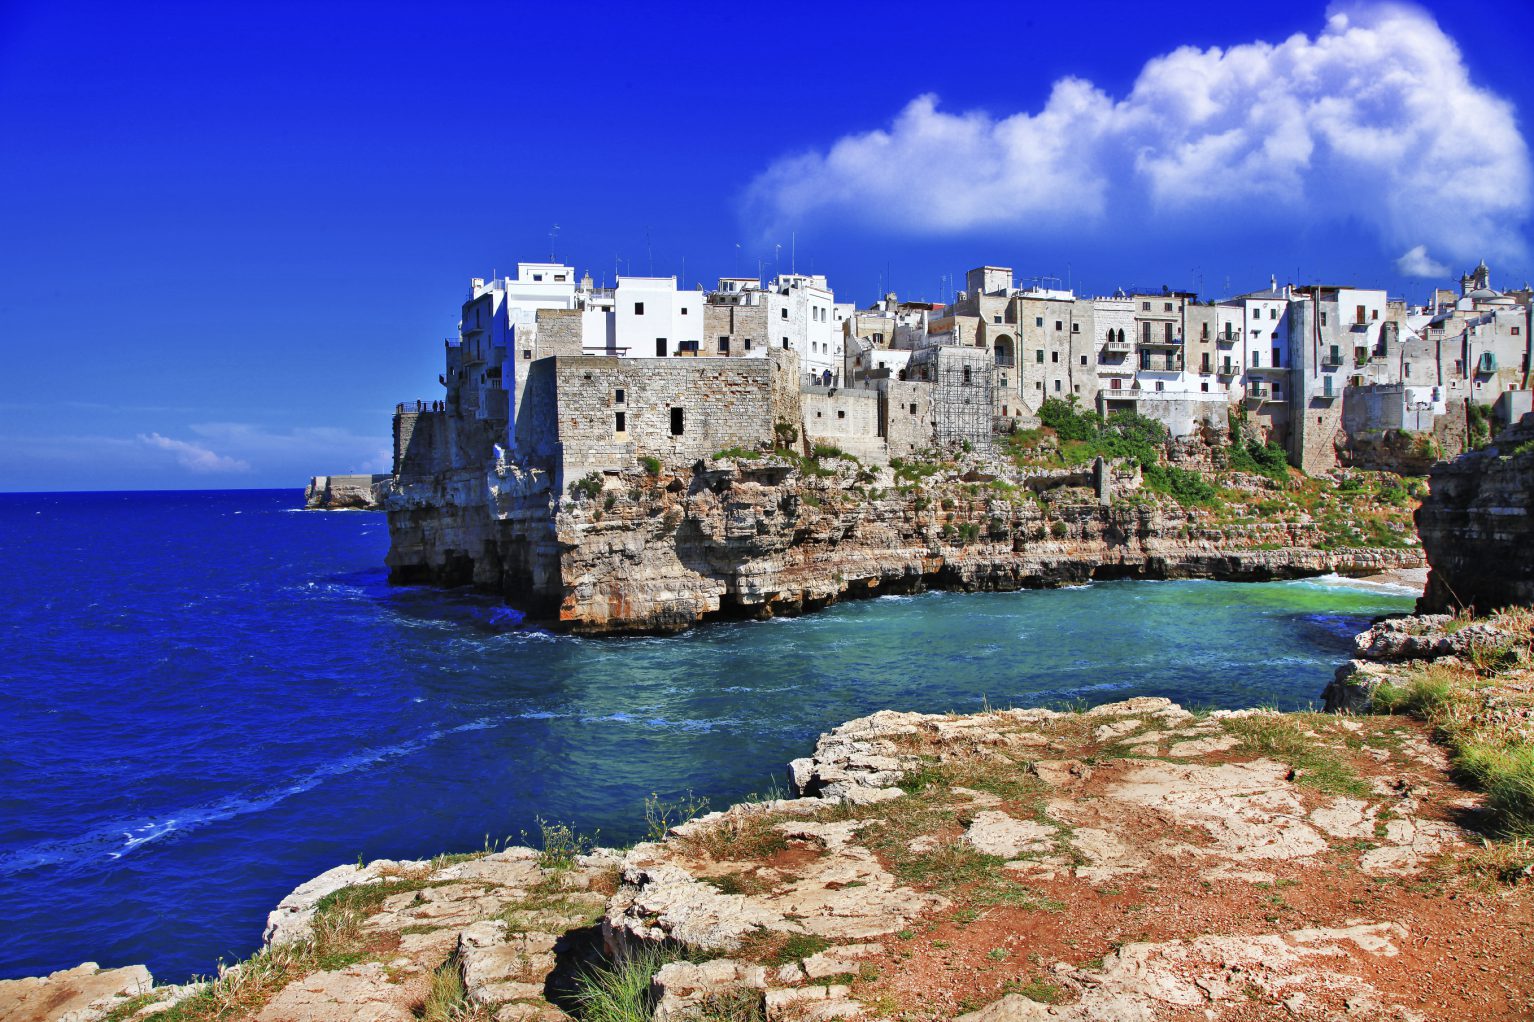 Polignano a Mare in Puglia is a popular seaside town